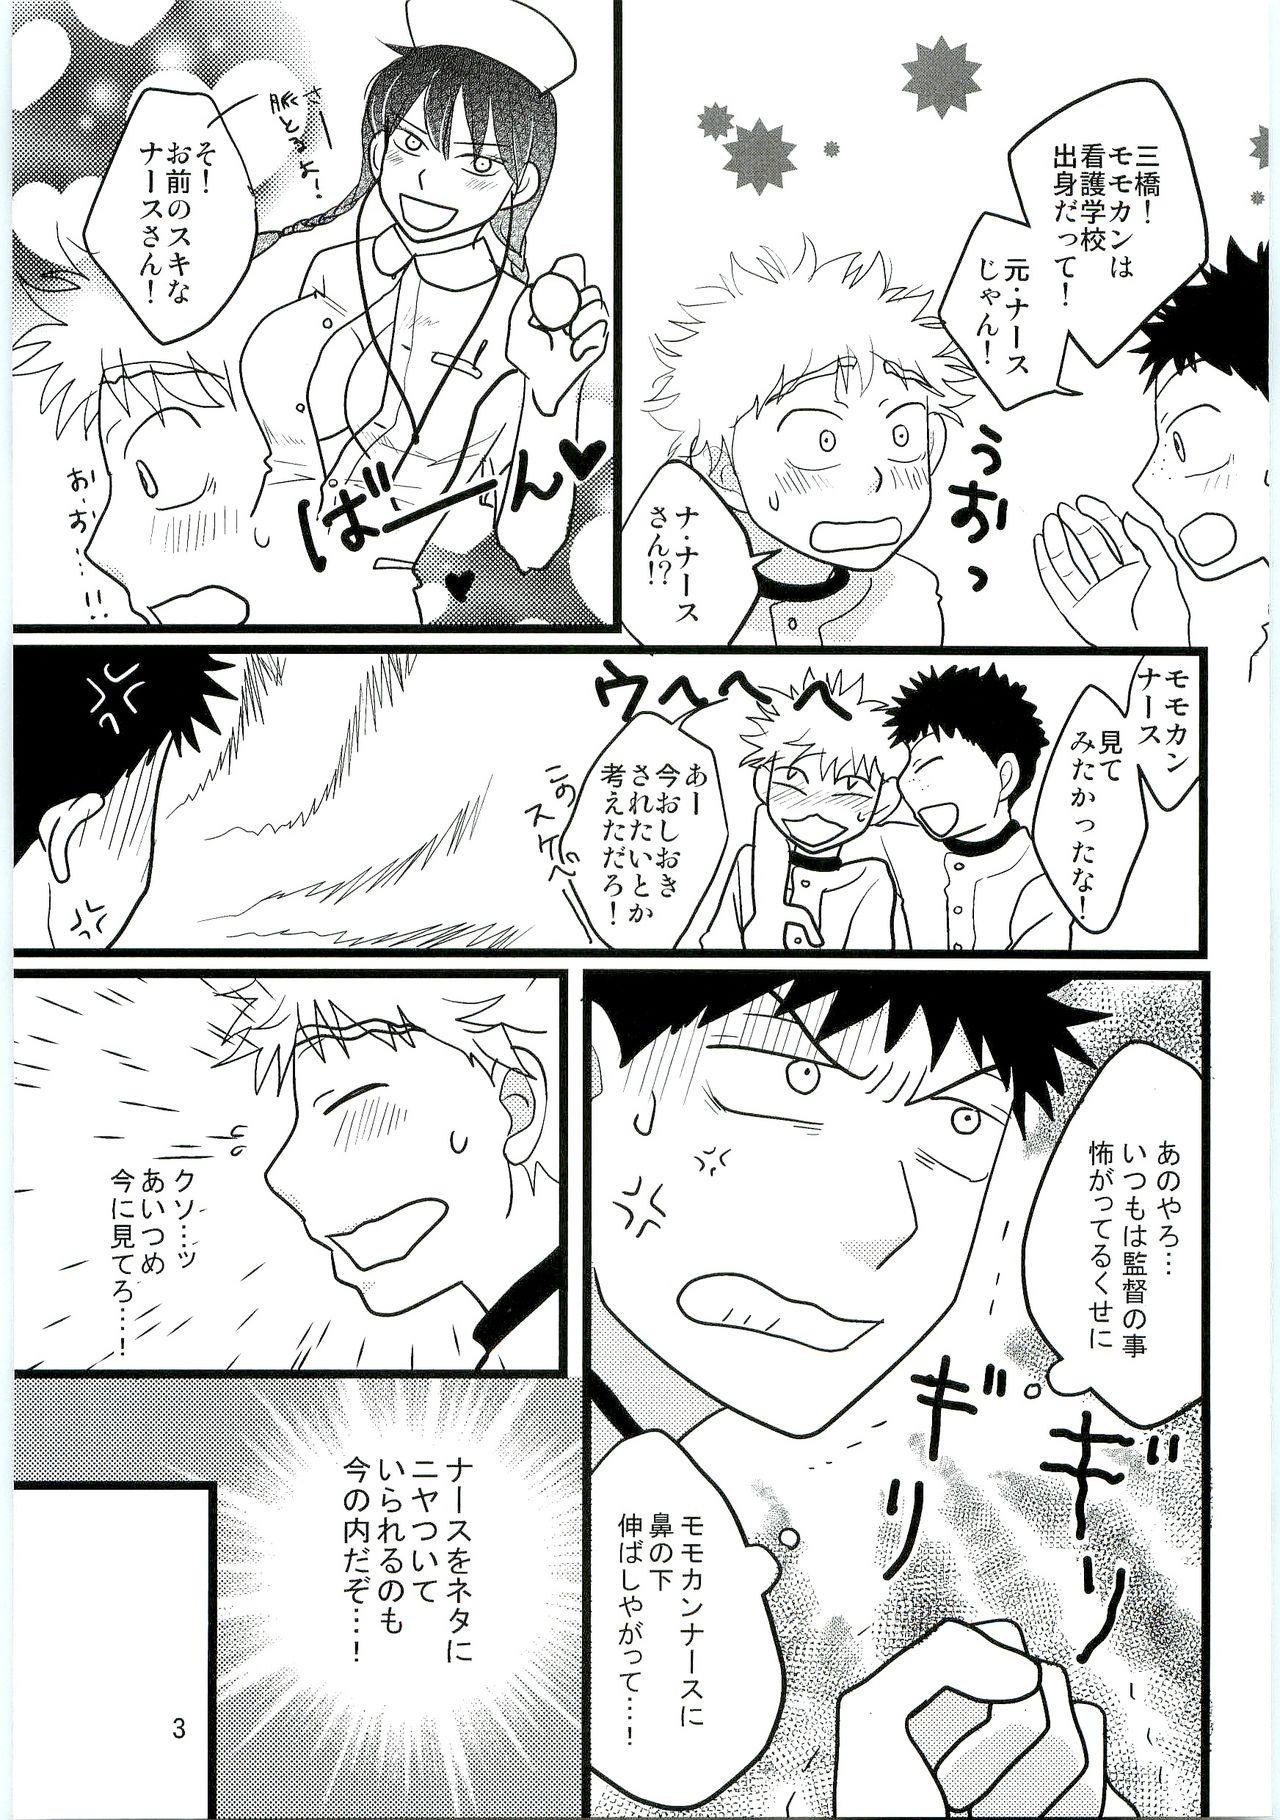 Abg Kimi no Chuusha wa 1-man Barrel - Ookiku furikabutte Sentones - Page 2